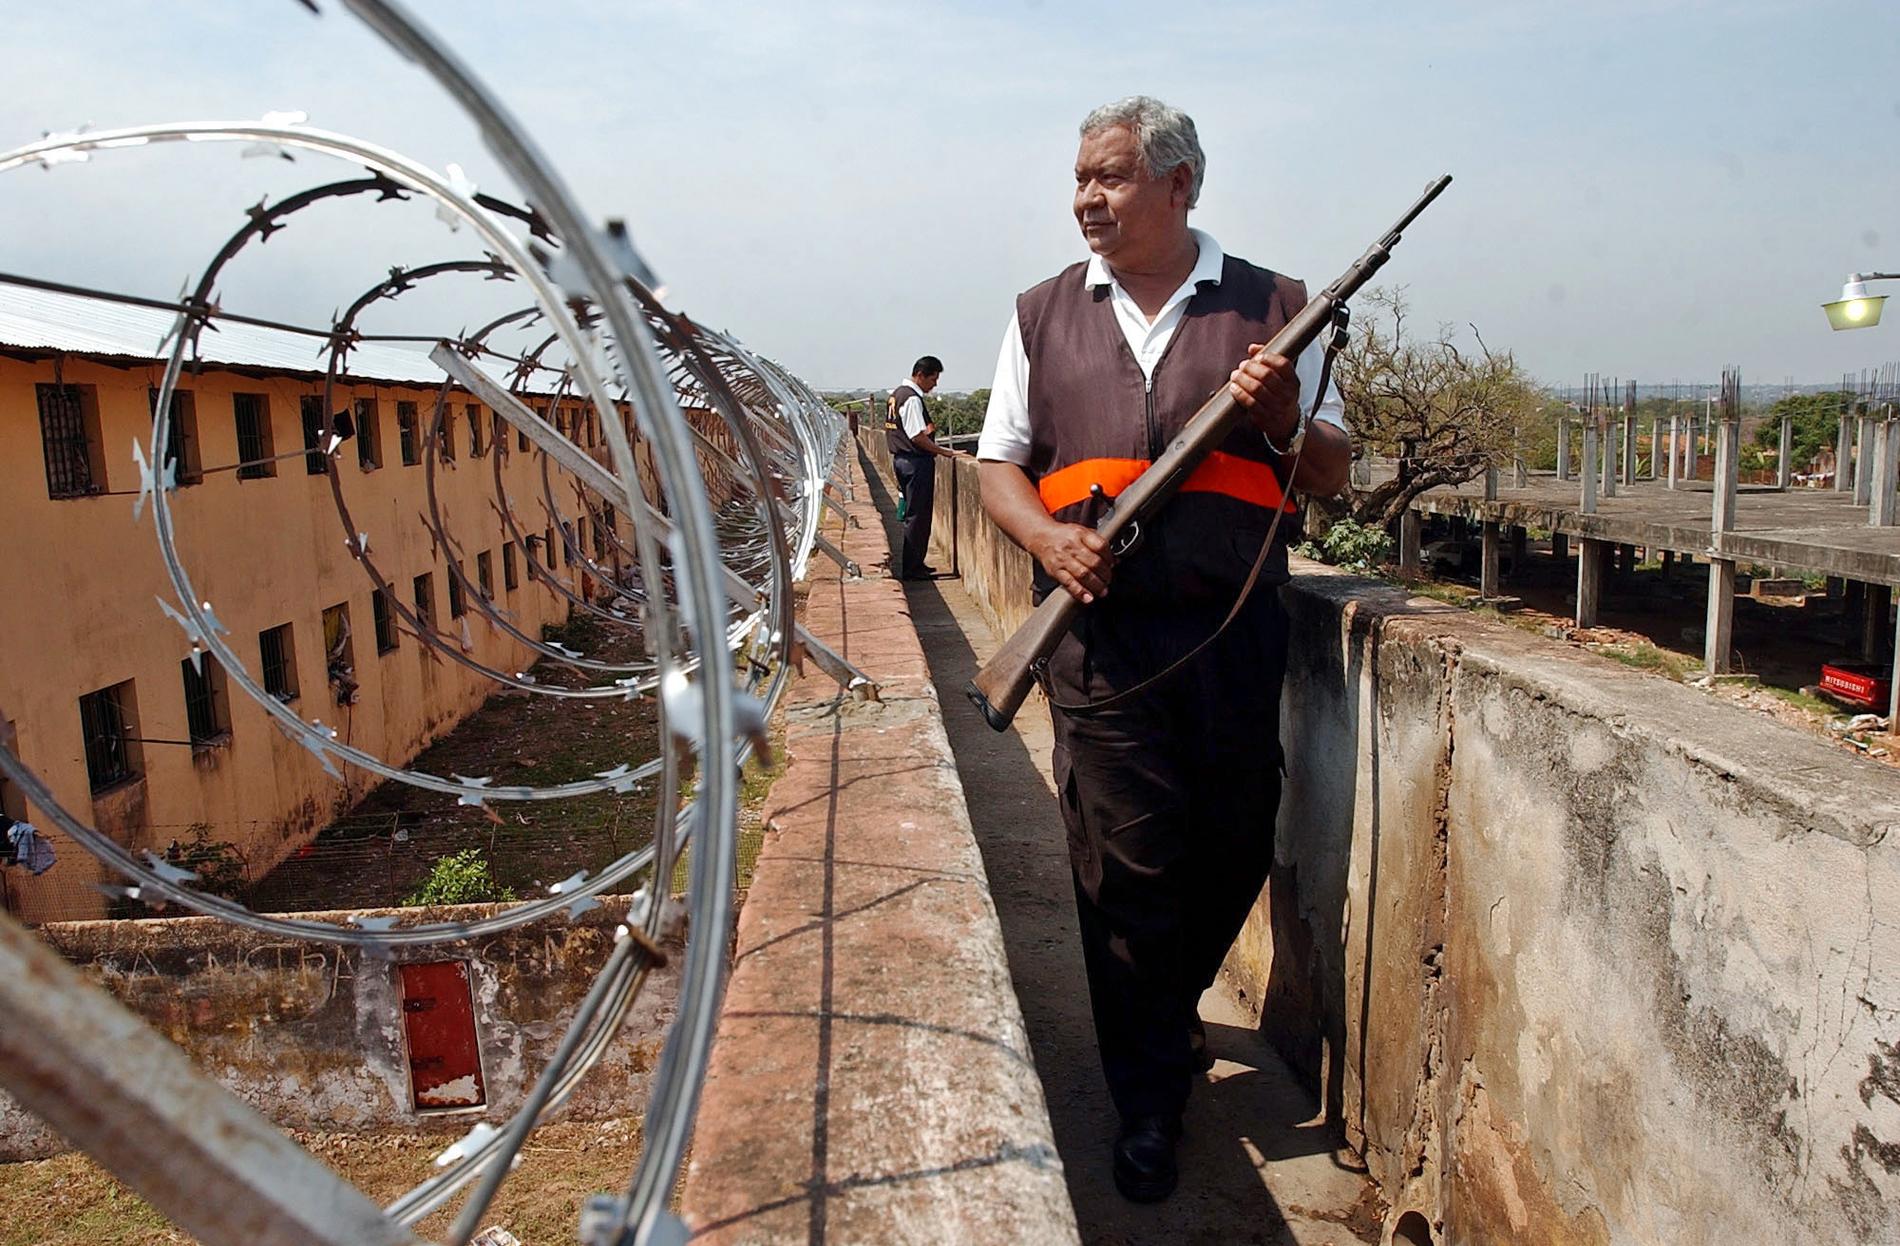 En vakt patrullerar ett fängelse i Paraguay. Arkivbild.